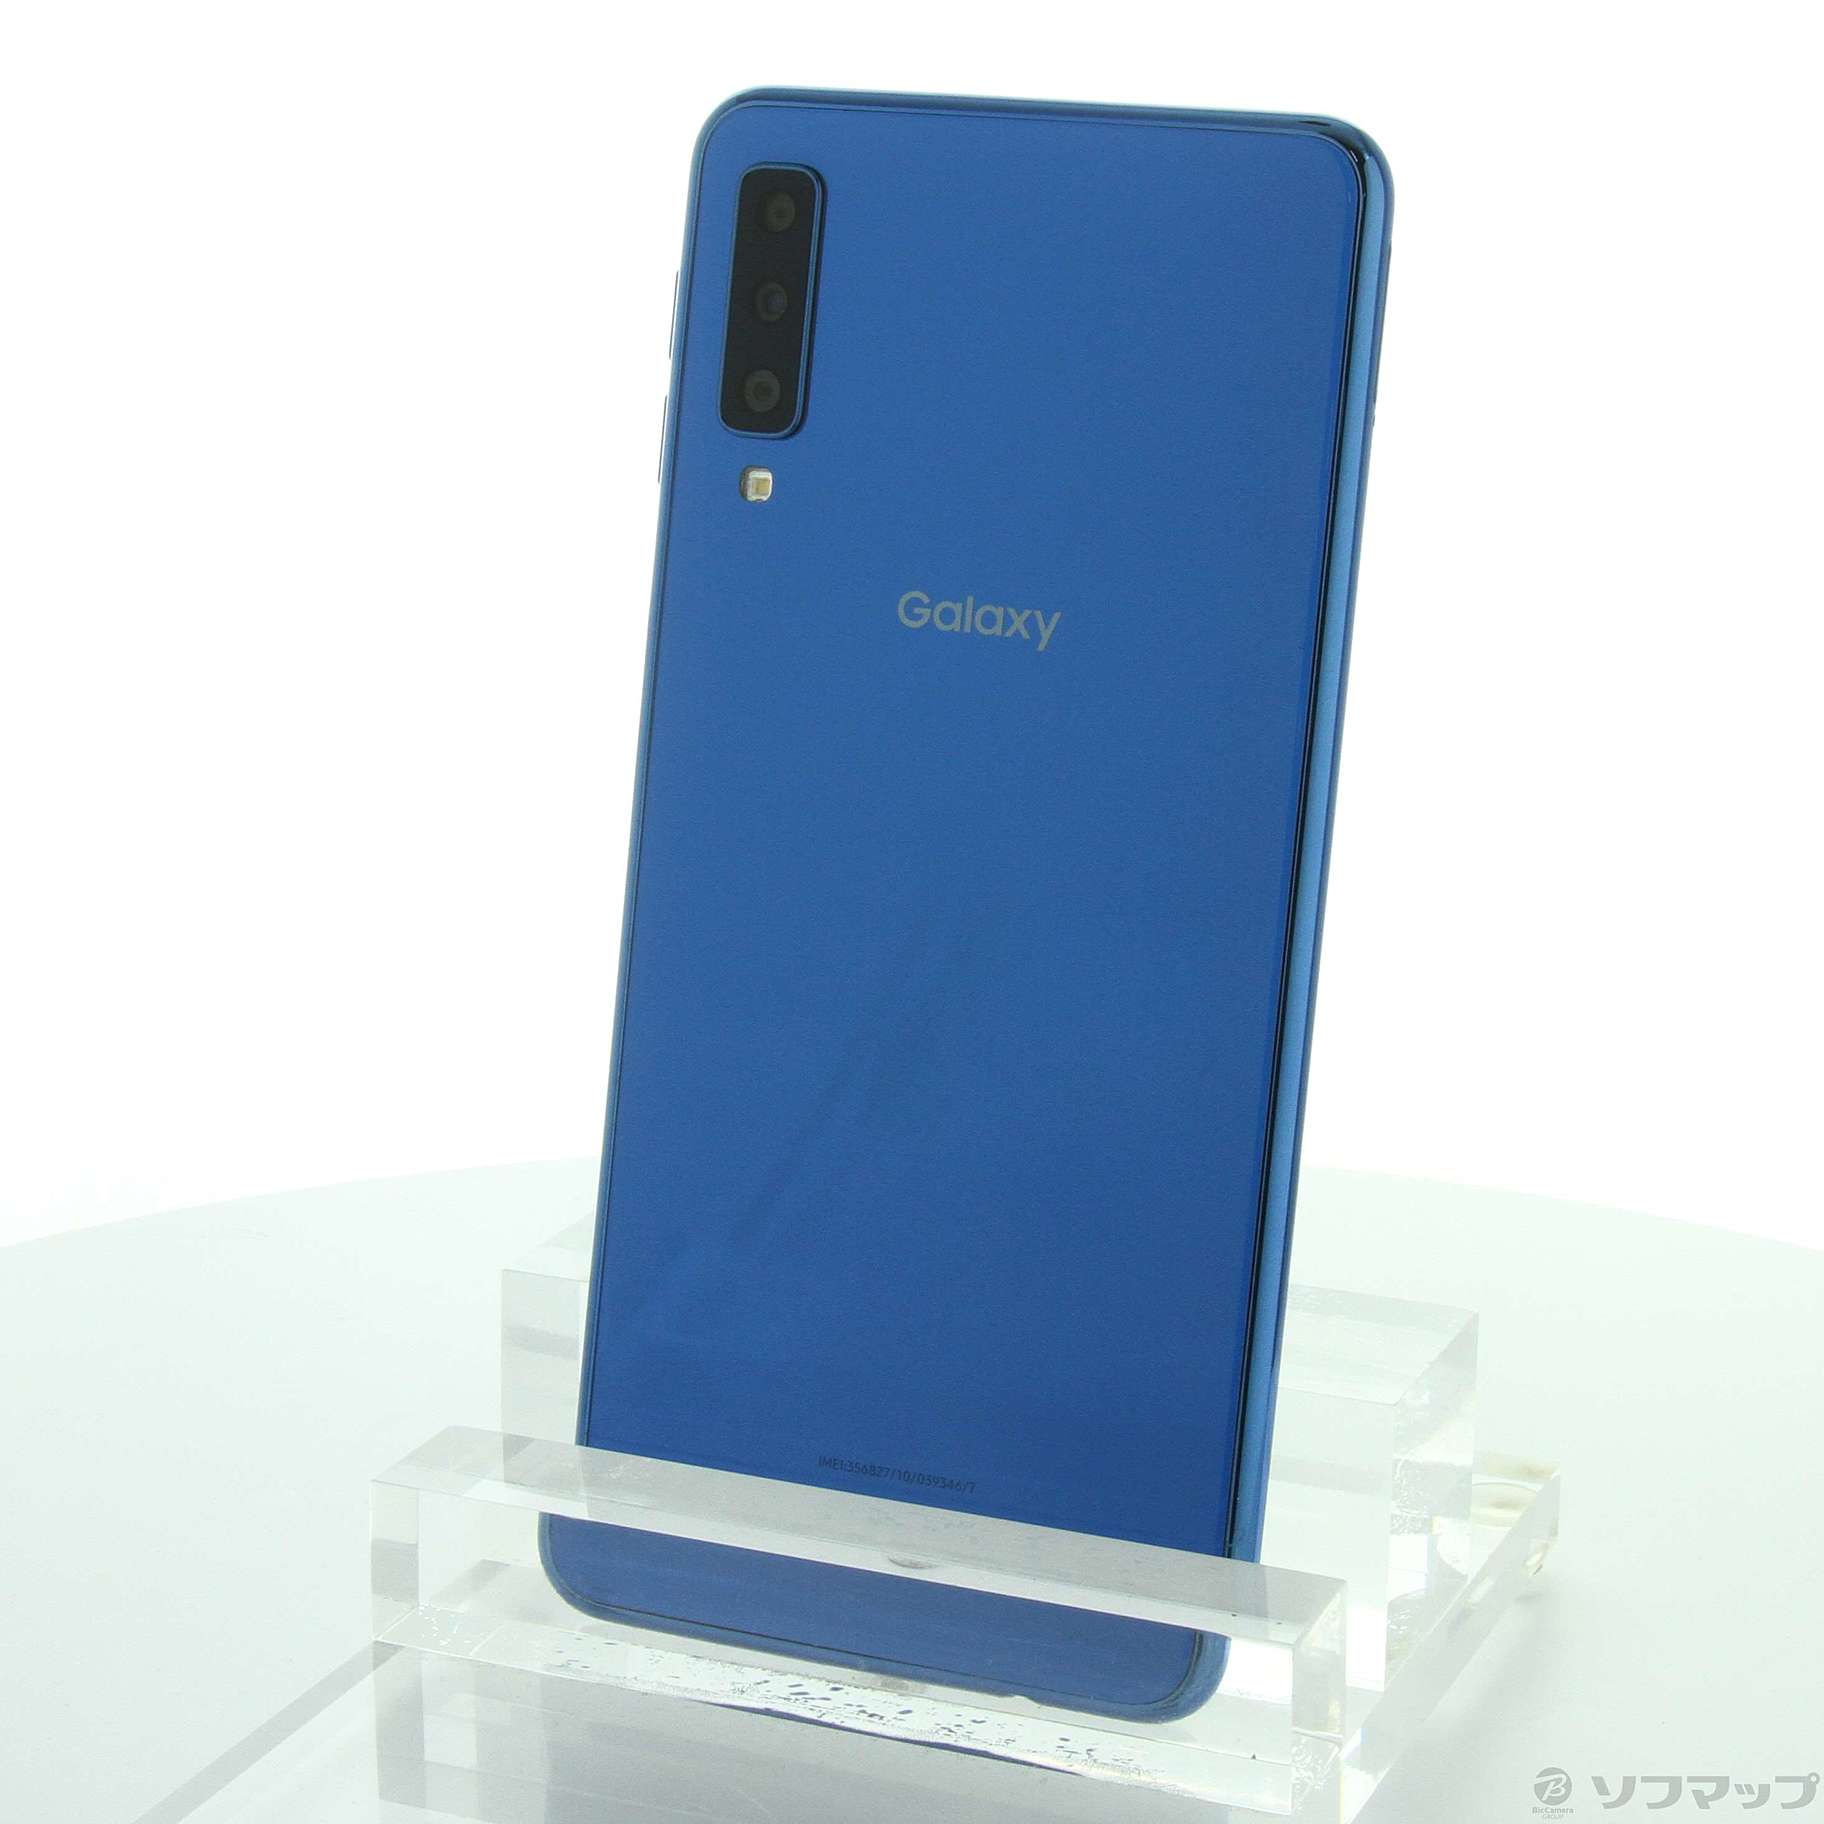 楽天市場にて一括購入購入時期Galaxy A7 ブルー 64GB SIMフリー - www 